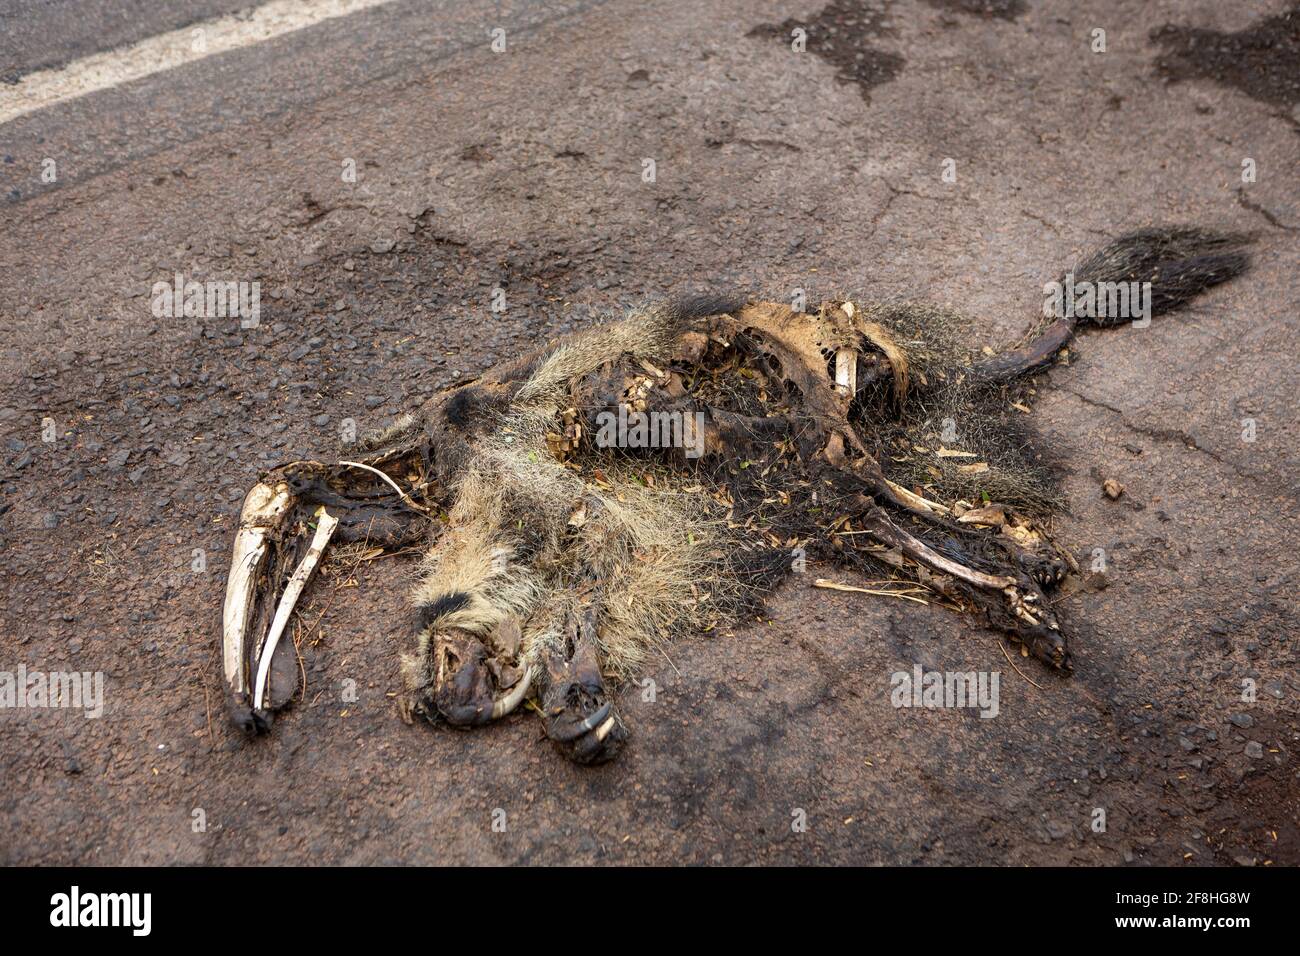 Un'anteater gigante morto, Myrmecophaga tridactyla, scesa, ucciso da un veicolo in viaggio. Uccisione di animali selvatici nella foresta amazzonica, in Brasile. Foto Stock